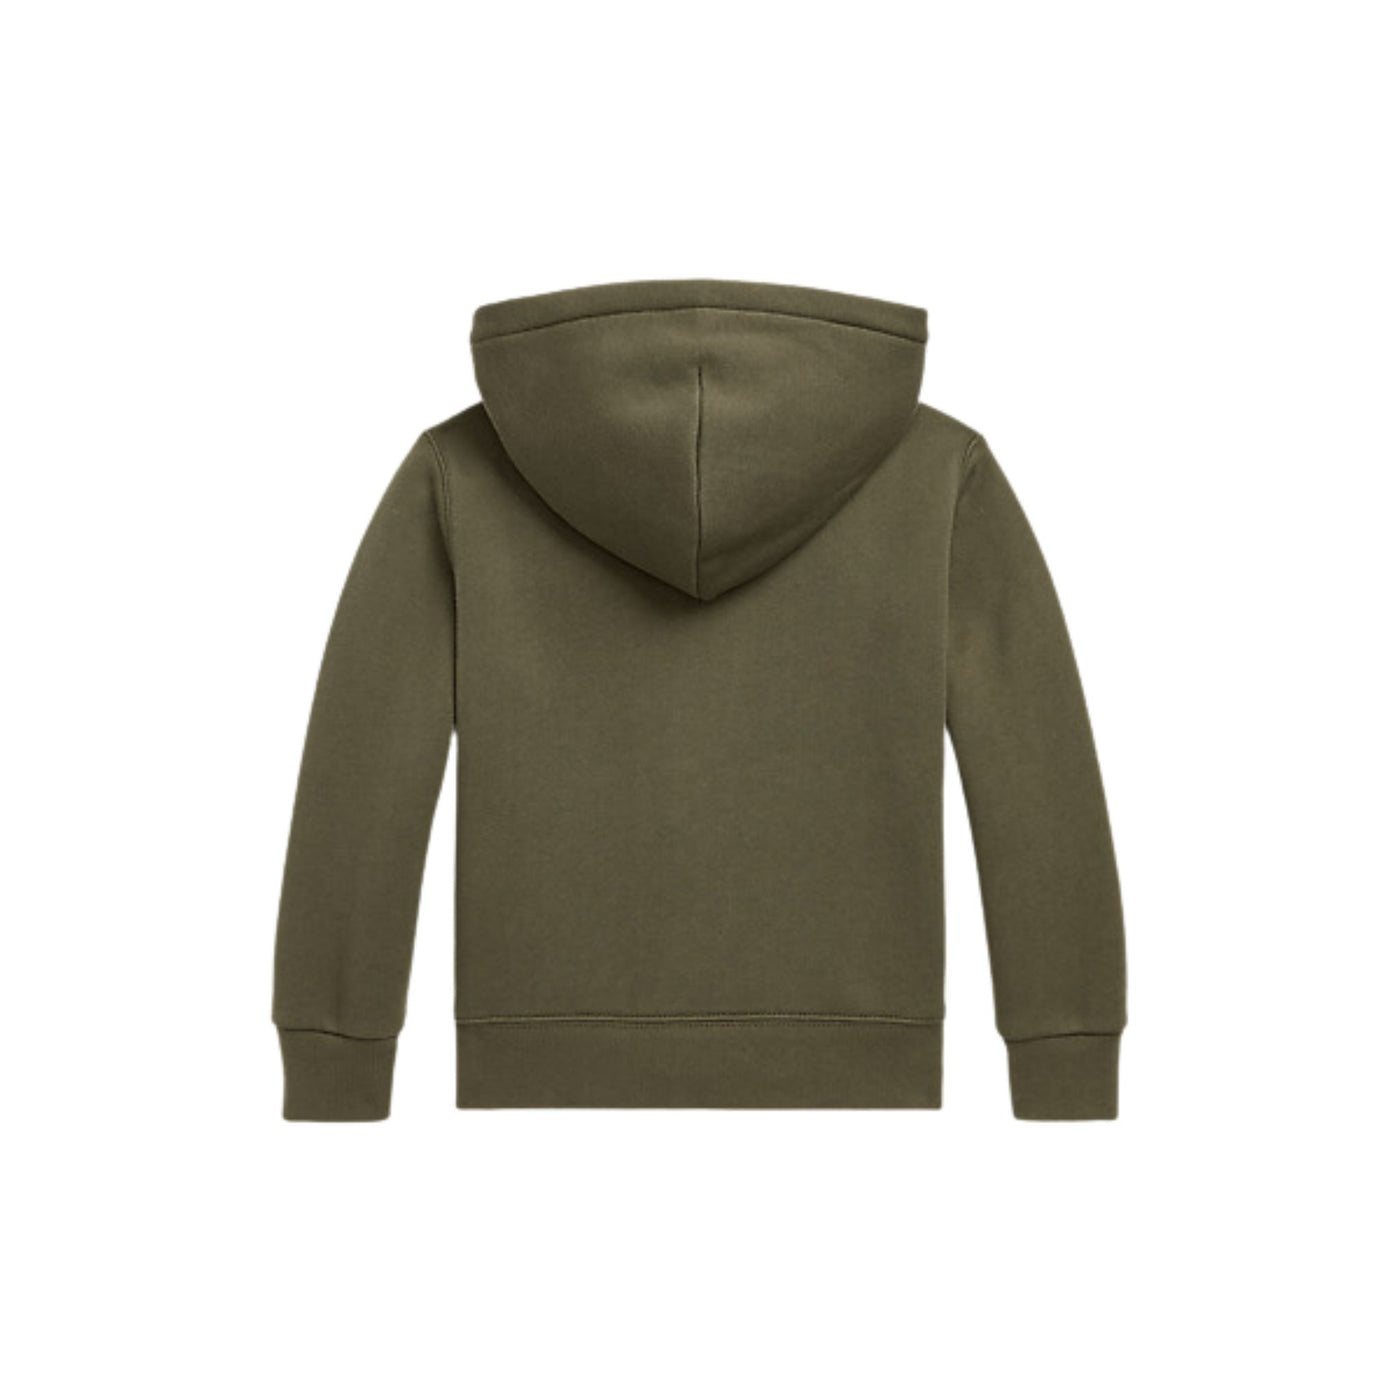 Child's zip-up sweatshirt with hood